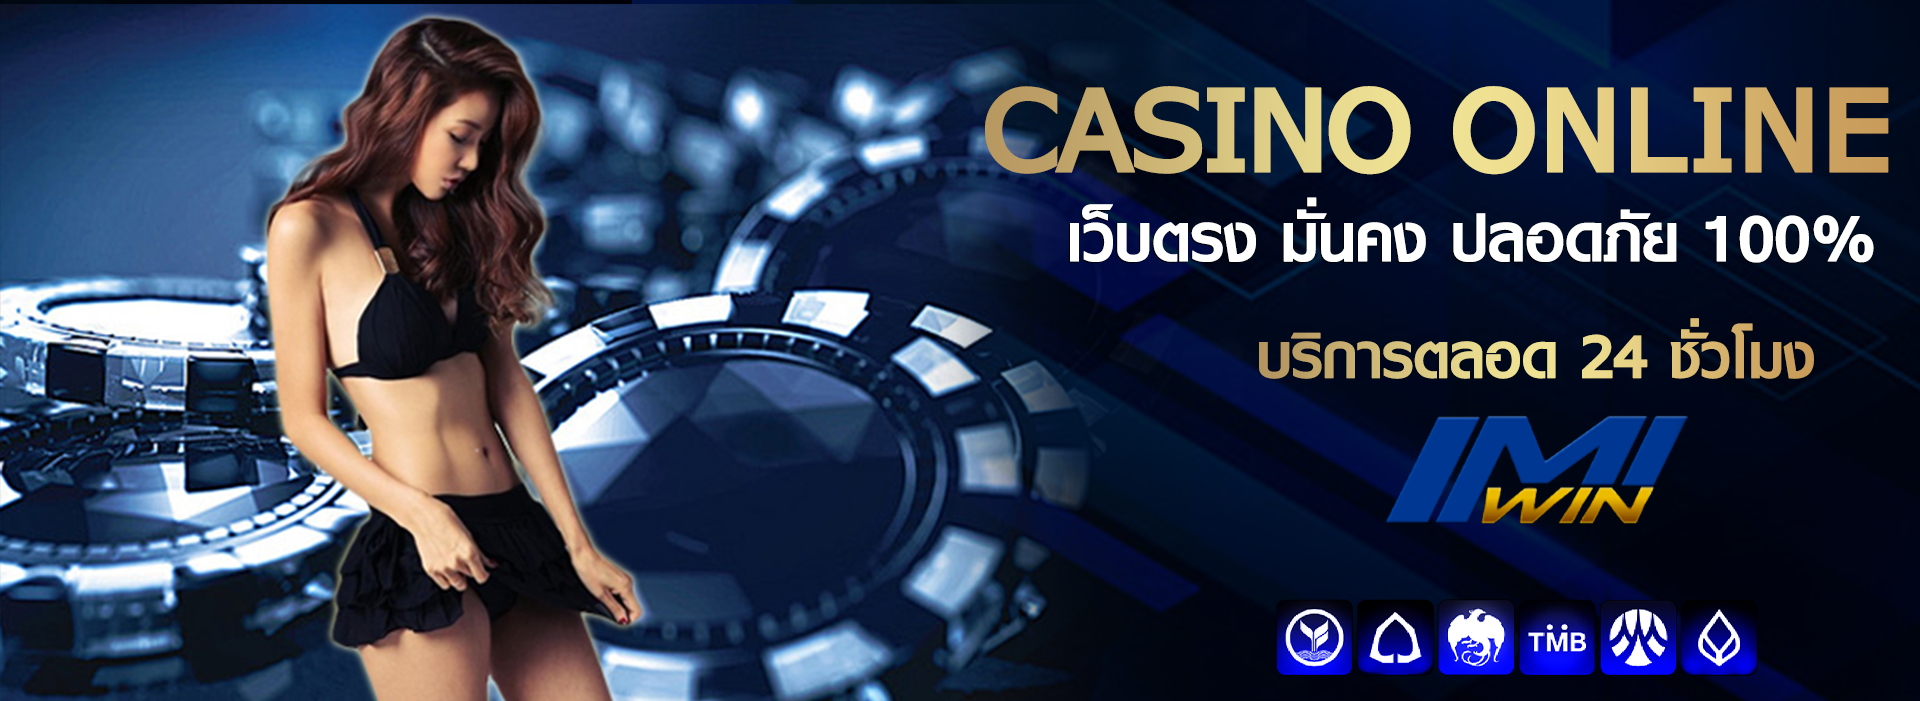 casino imiwin789